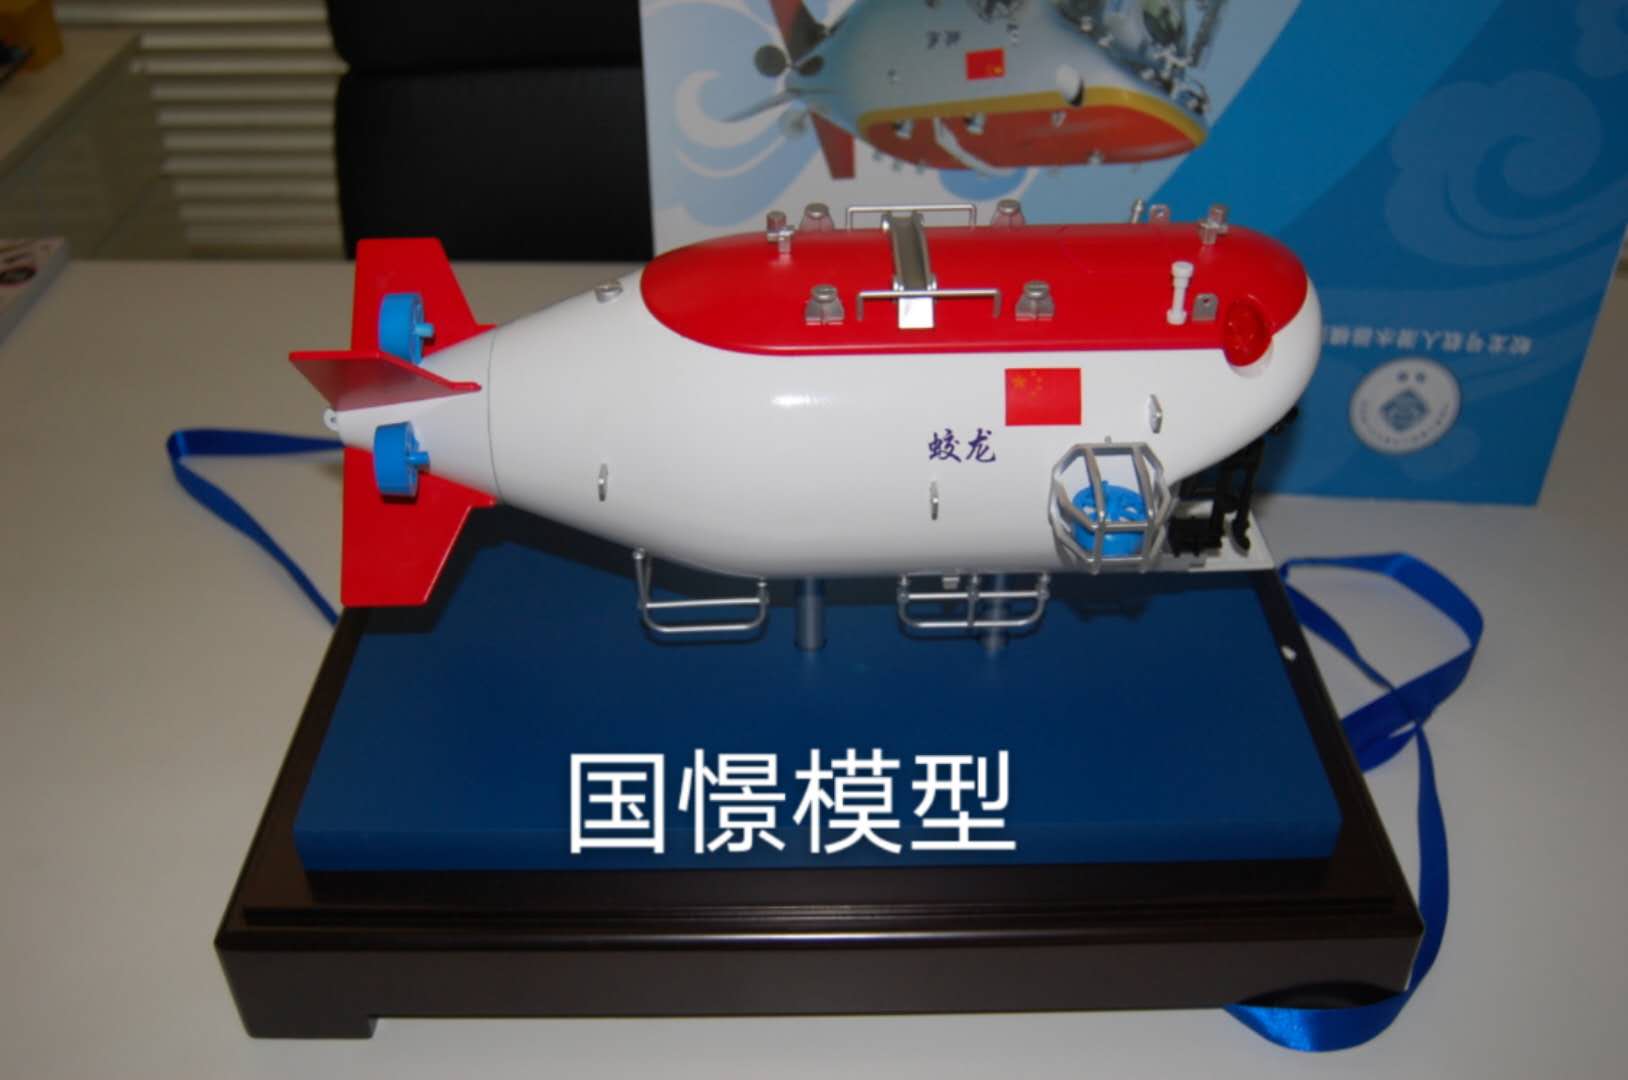 咸丰县船舶模型